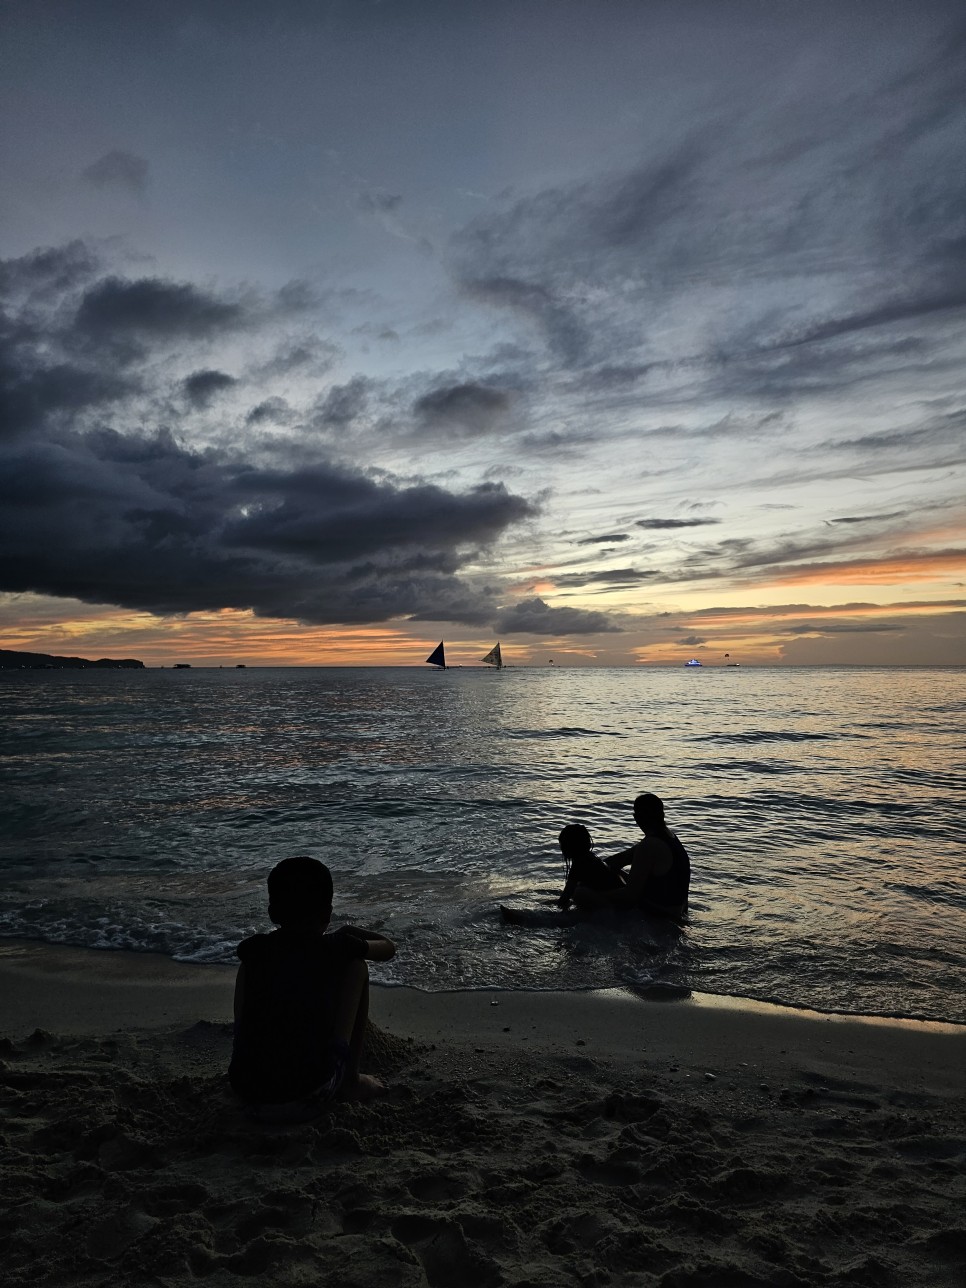 필리핀 보라카이 패키지 여행 화이트비치에서의 자유시간